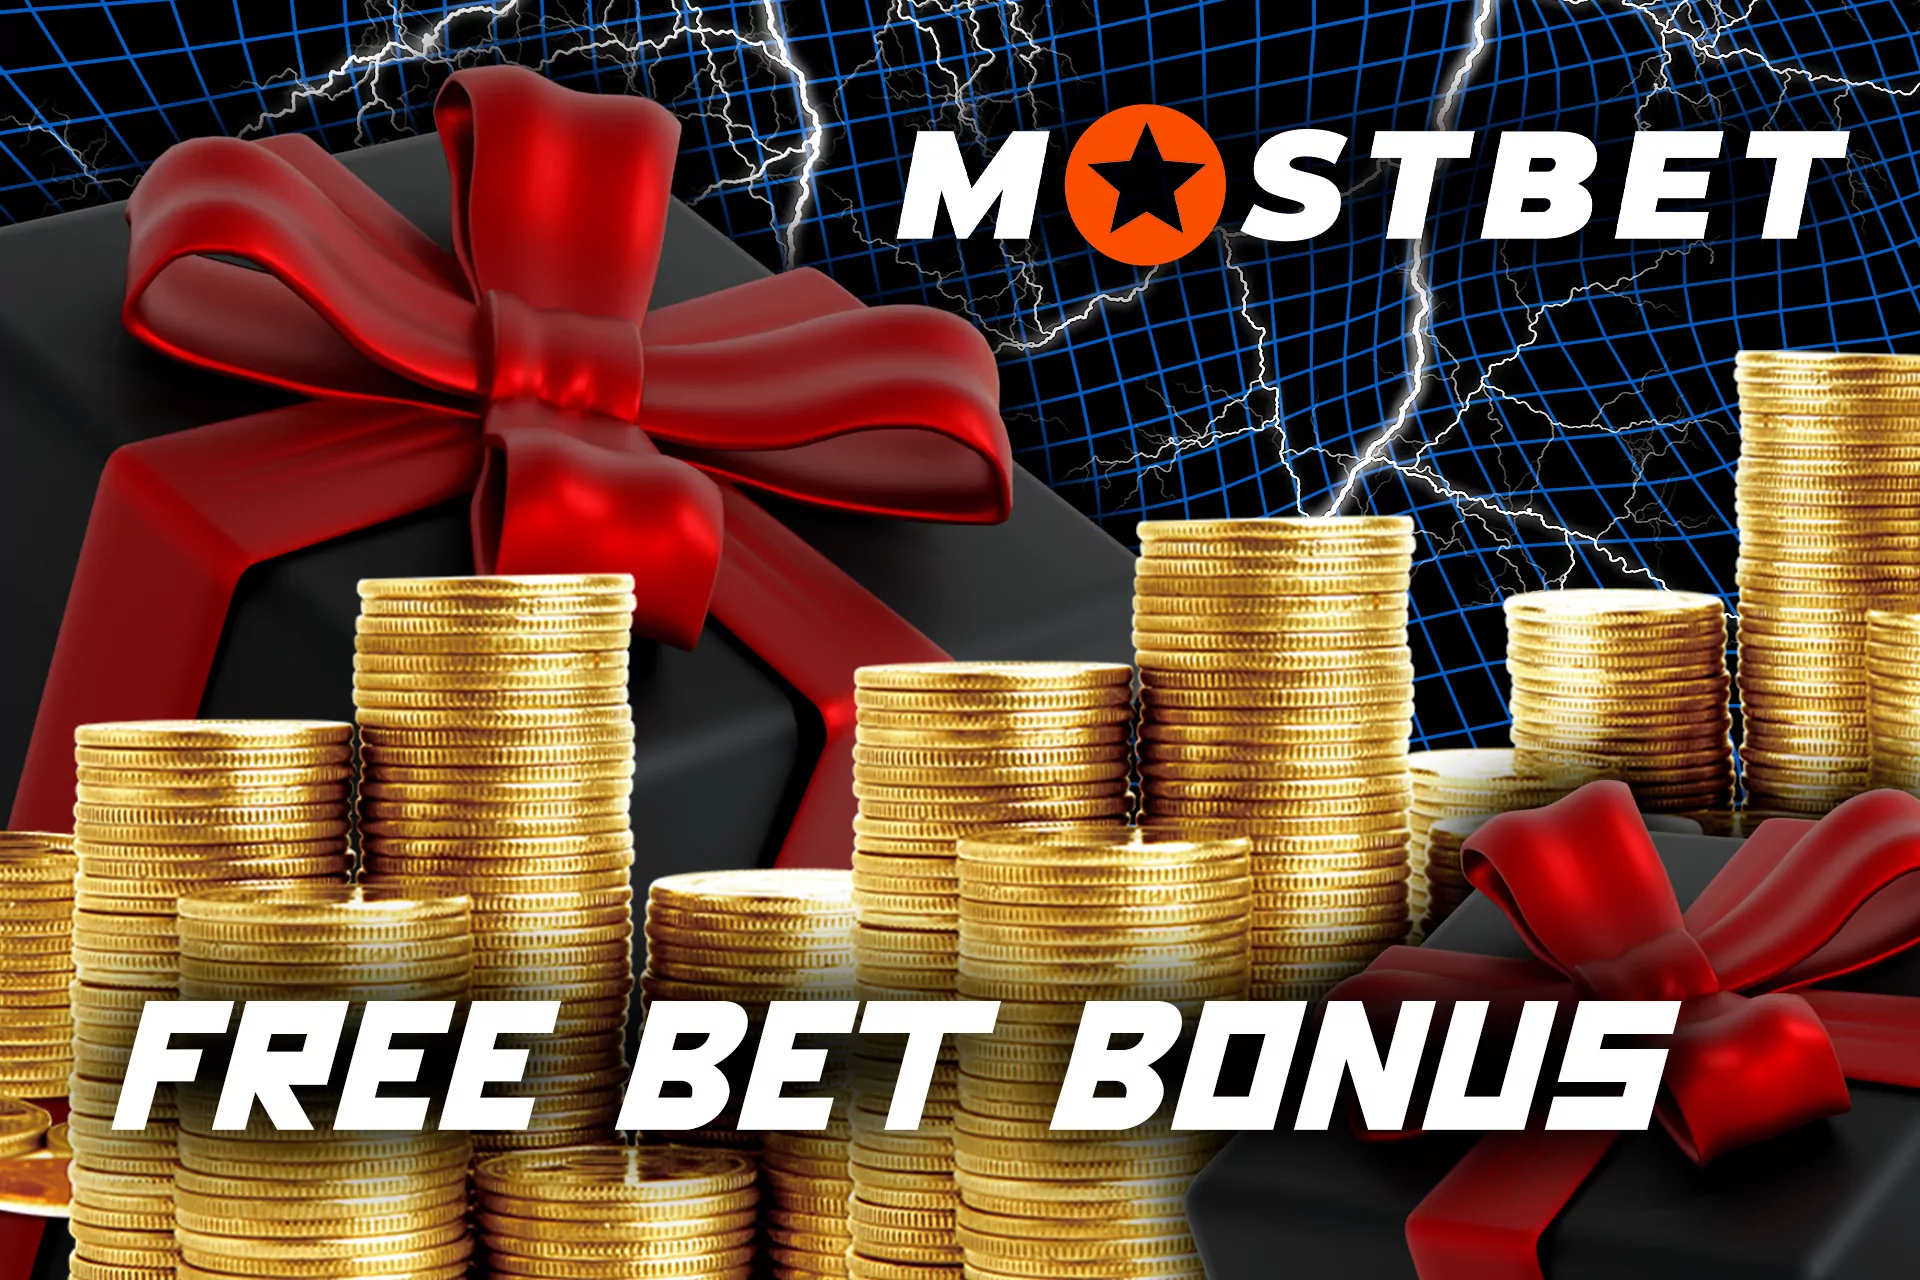 Free bet bonus at Mostbet.